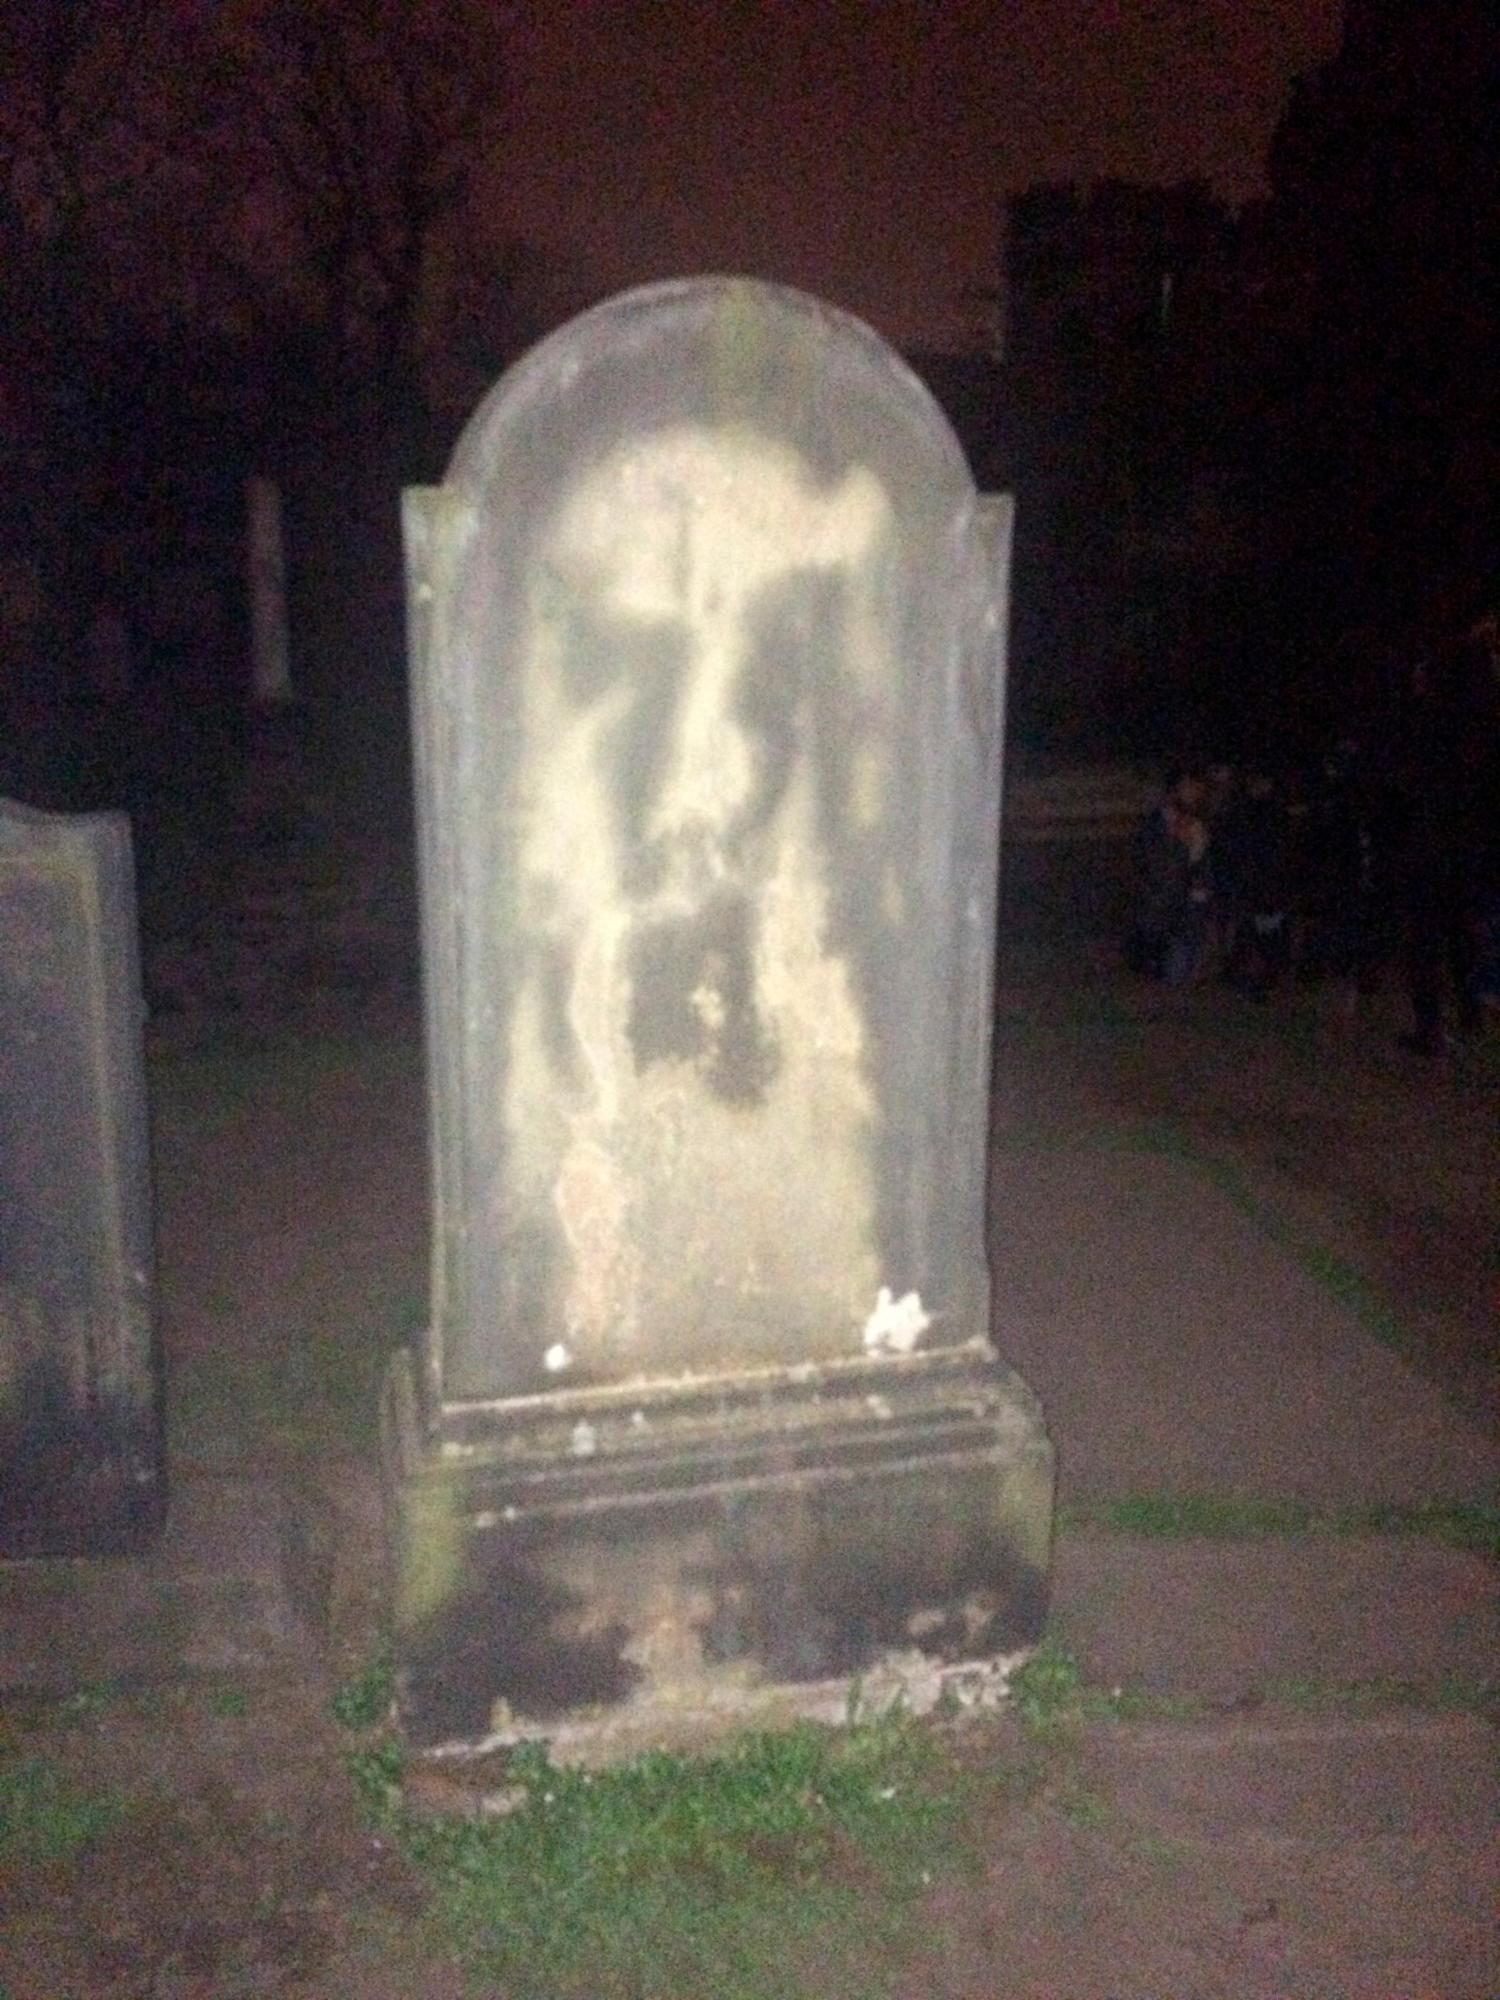 Tumba del pintor David Allan, en el cementerio de Old Calton en Edimburgo. En su l·pida se puede observar una gran mancha que se asemeja a un rostro con la boca muy abierta.